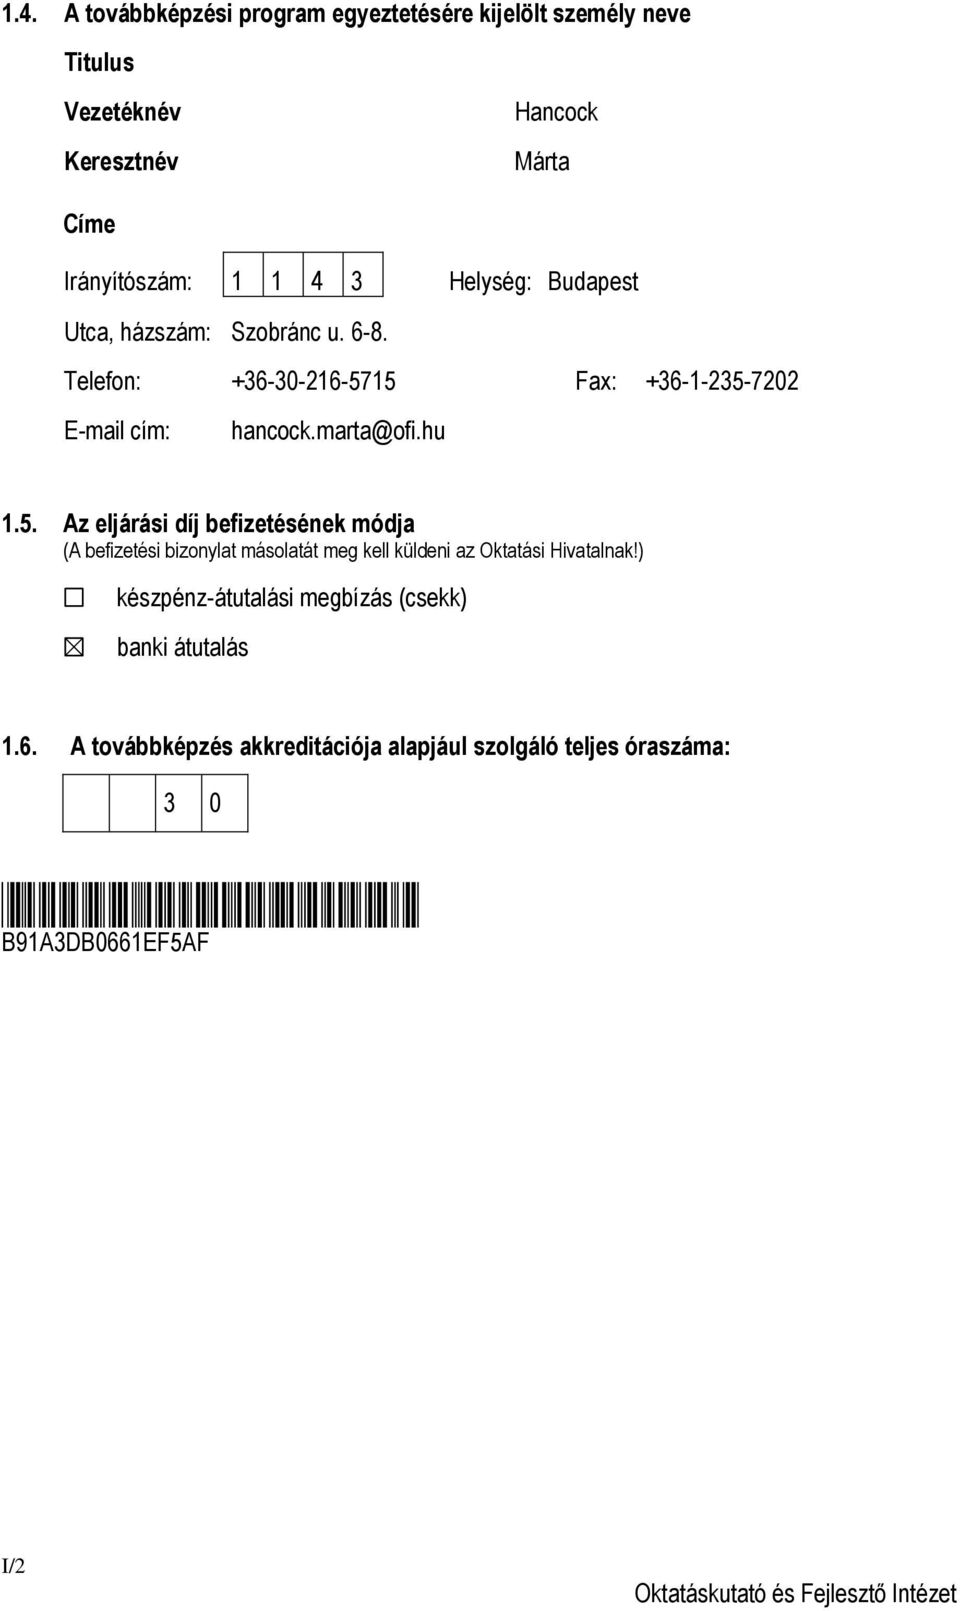 15 Fax: +36-1-235-7202 E-mail cím: hancock.marta@ofi.hu 1.5. Az eljárási díj befizetésének módja (A befizetési bizonylat másolatát meg kell küldeni az Oktatási Hivatalnak!